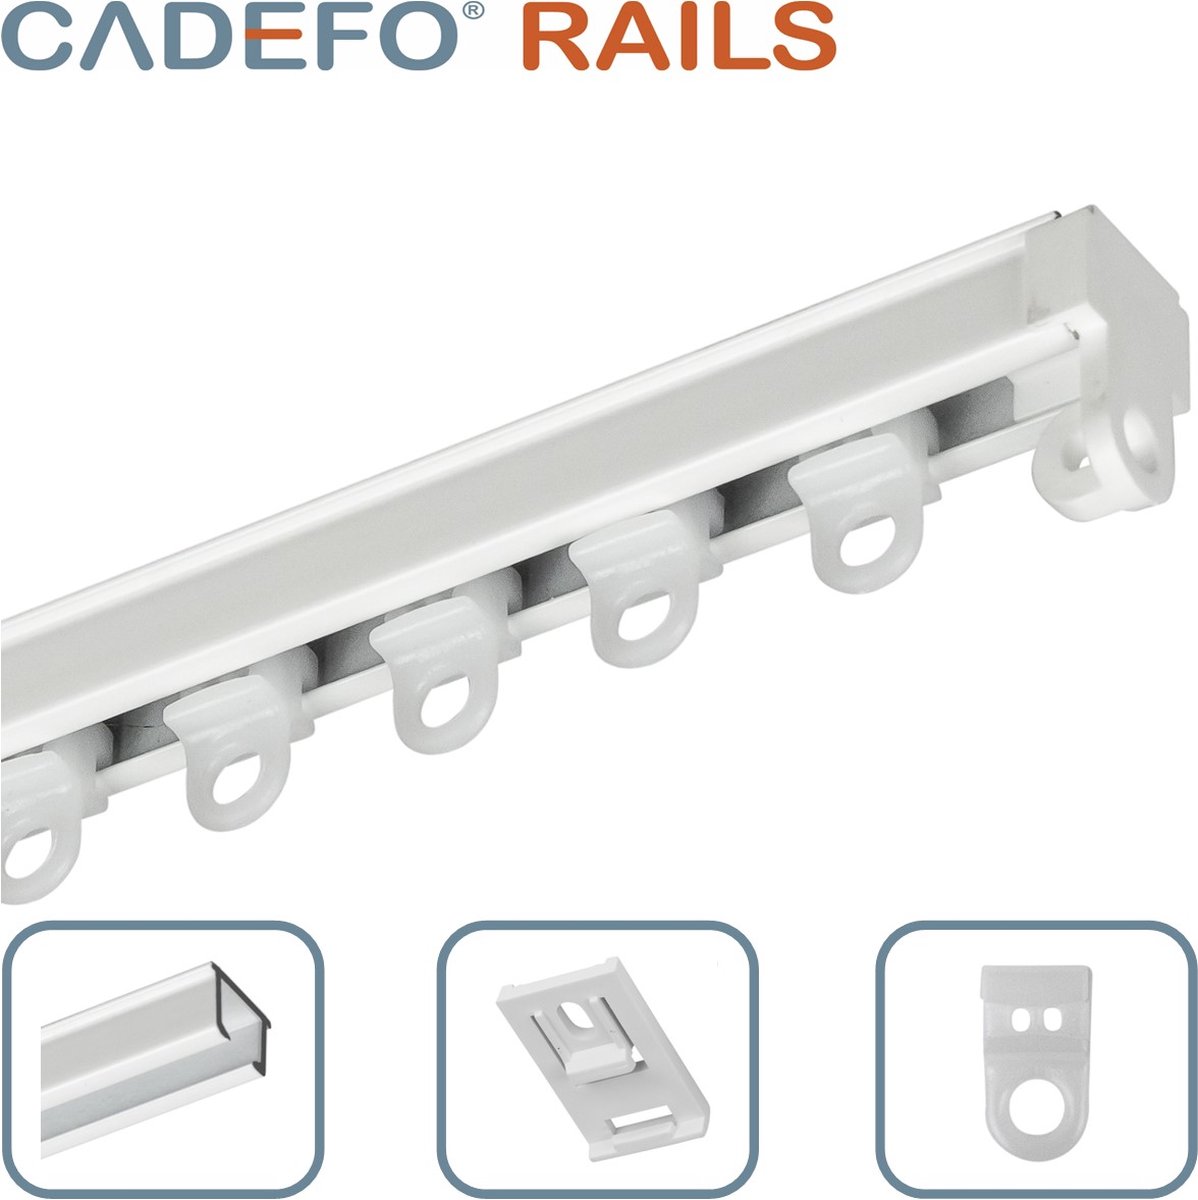 CADEFO RAILS (151 - 200 cm) Gordijnrails - Compleet op maat! - UIT 1 STUK - Leverbaar tot 6 meter - Plafondbevestiging - Lengte 183 cm